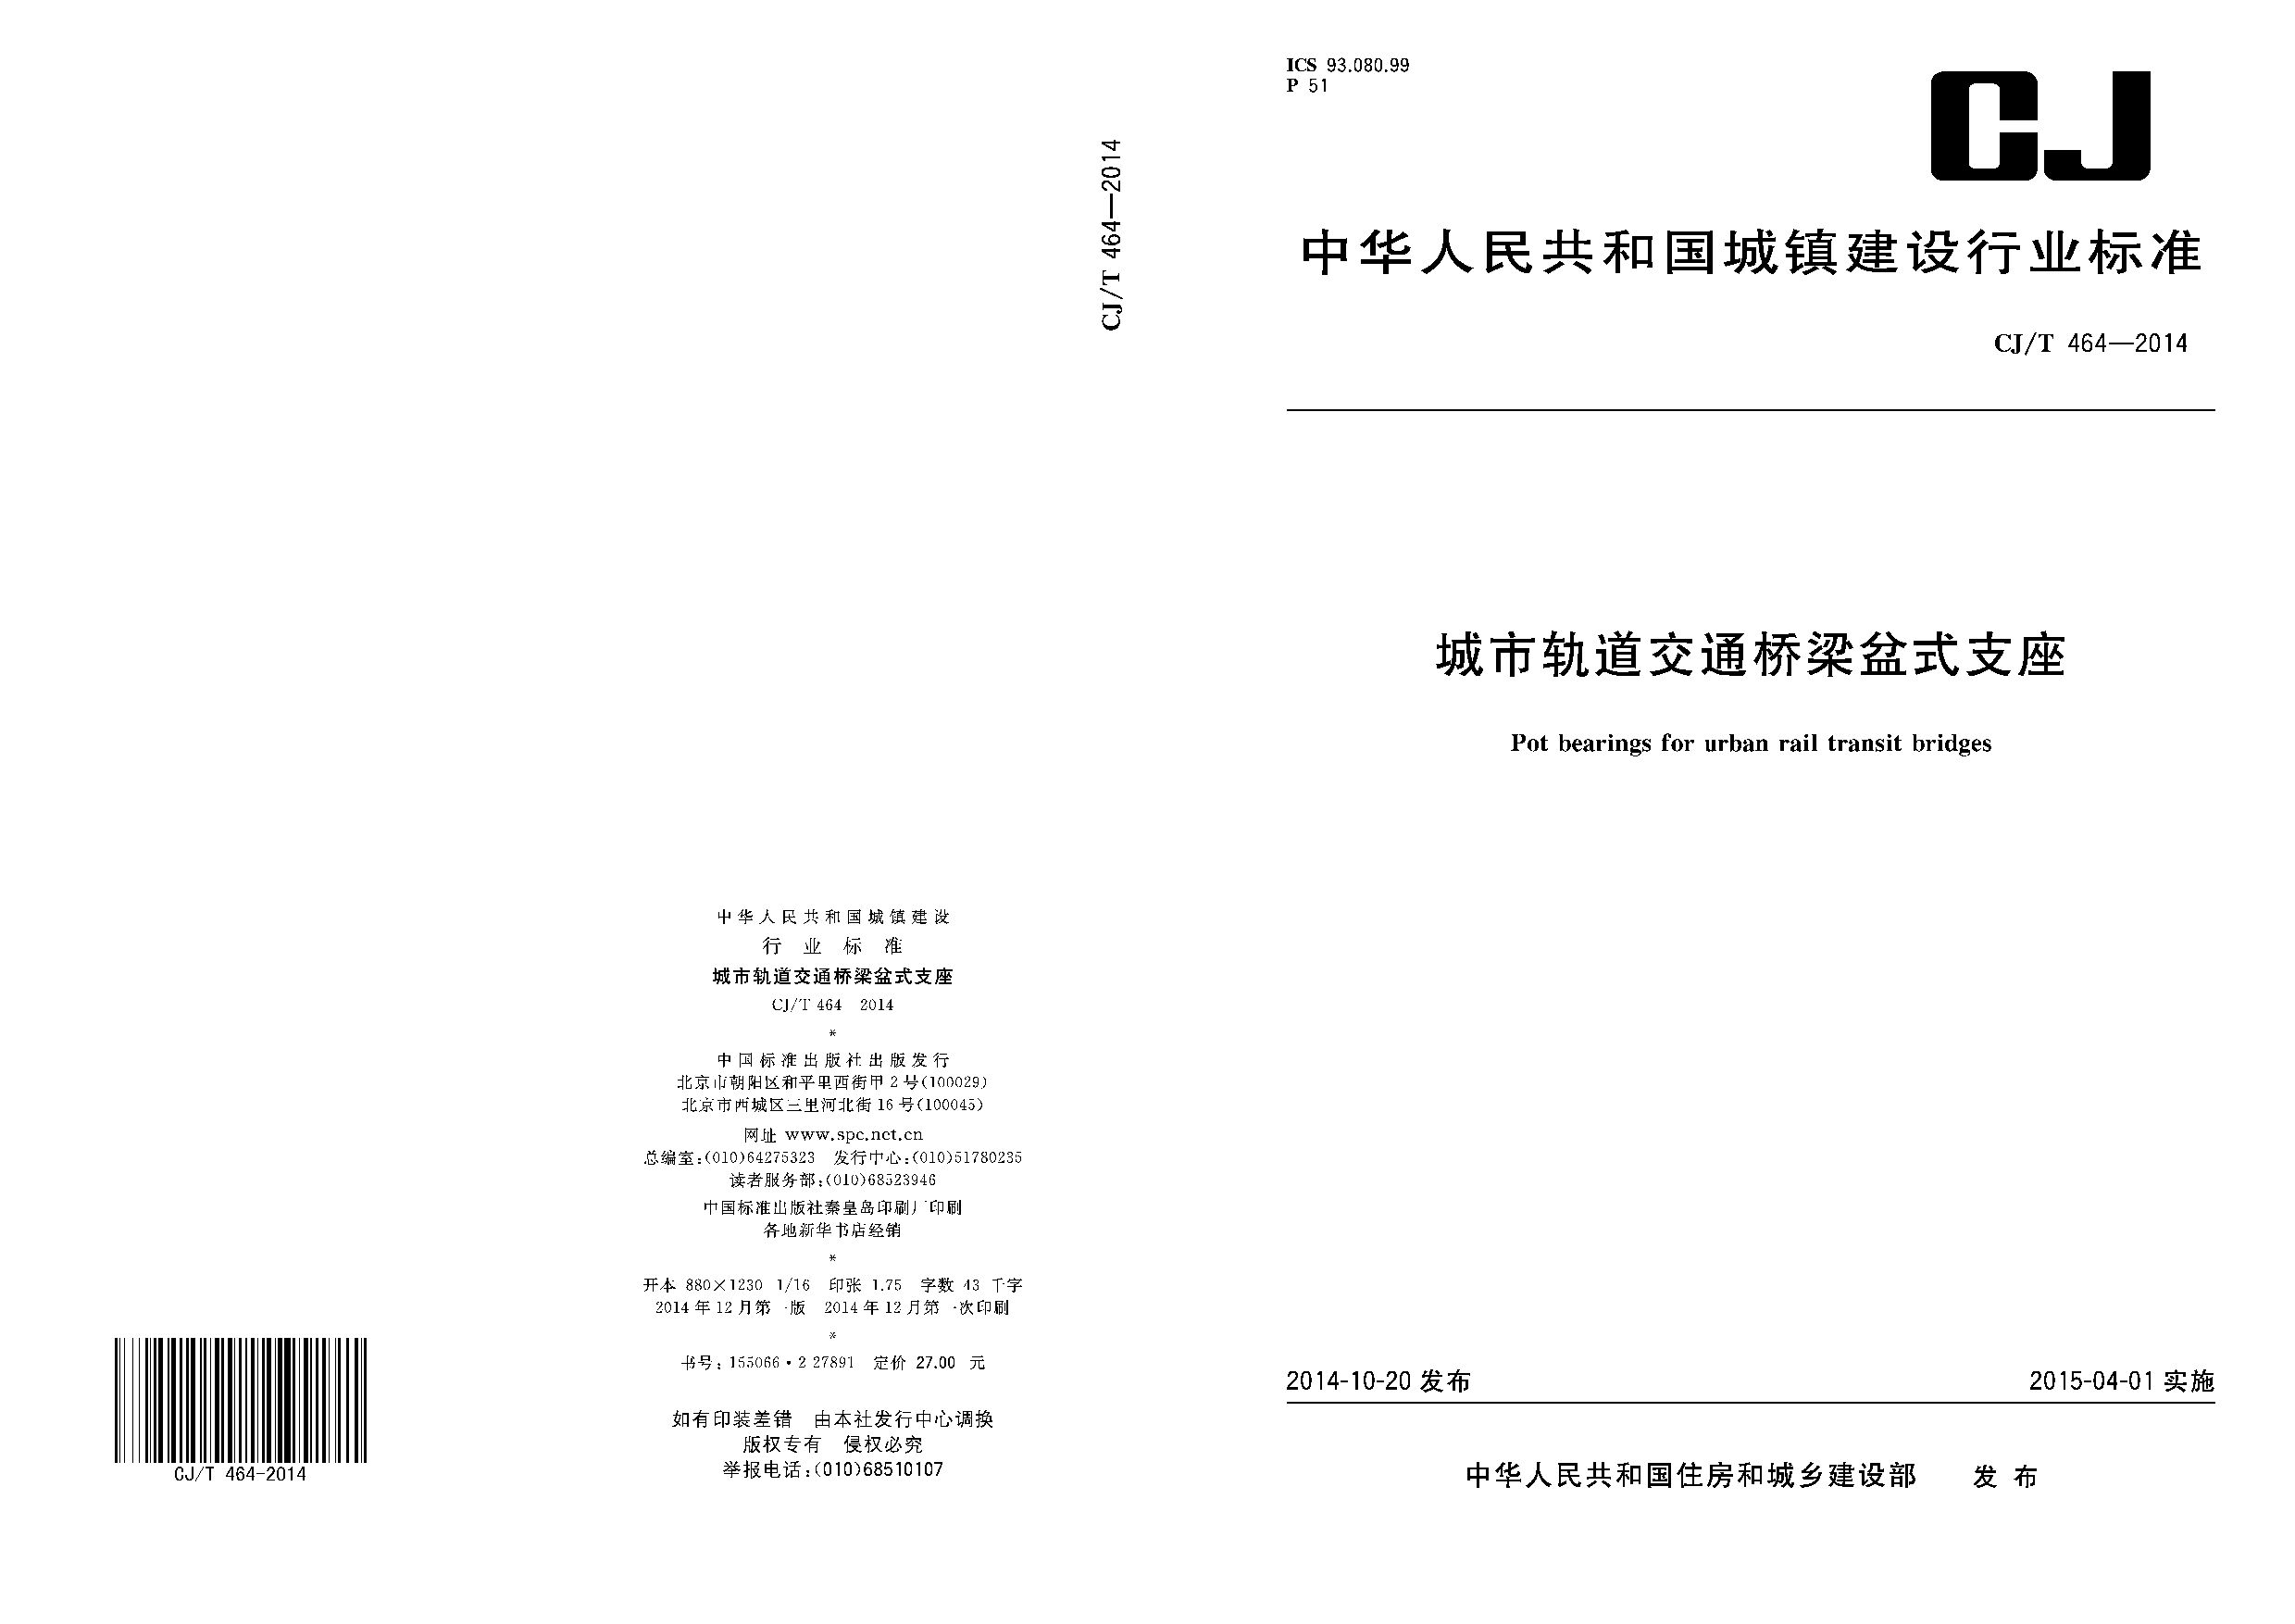 CJ/T 464-2014封面图